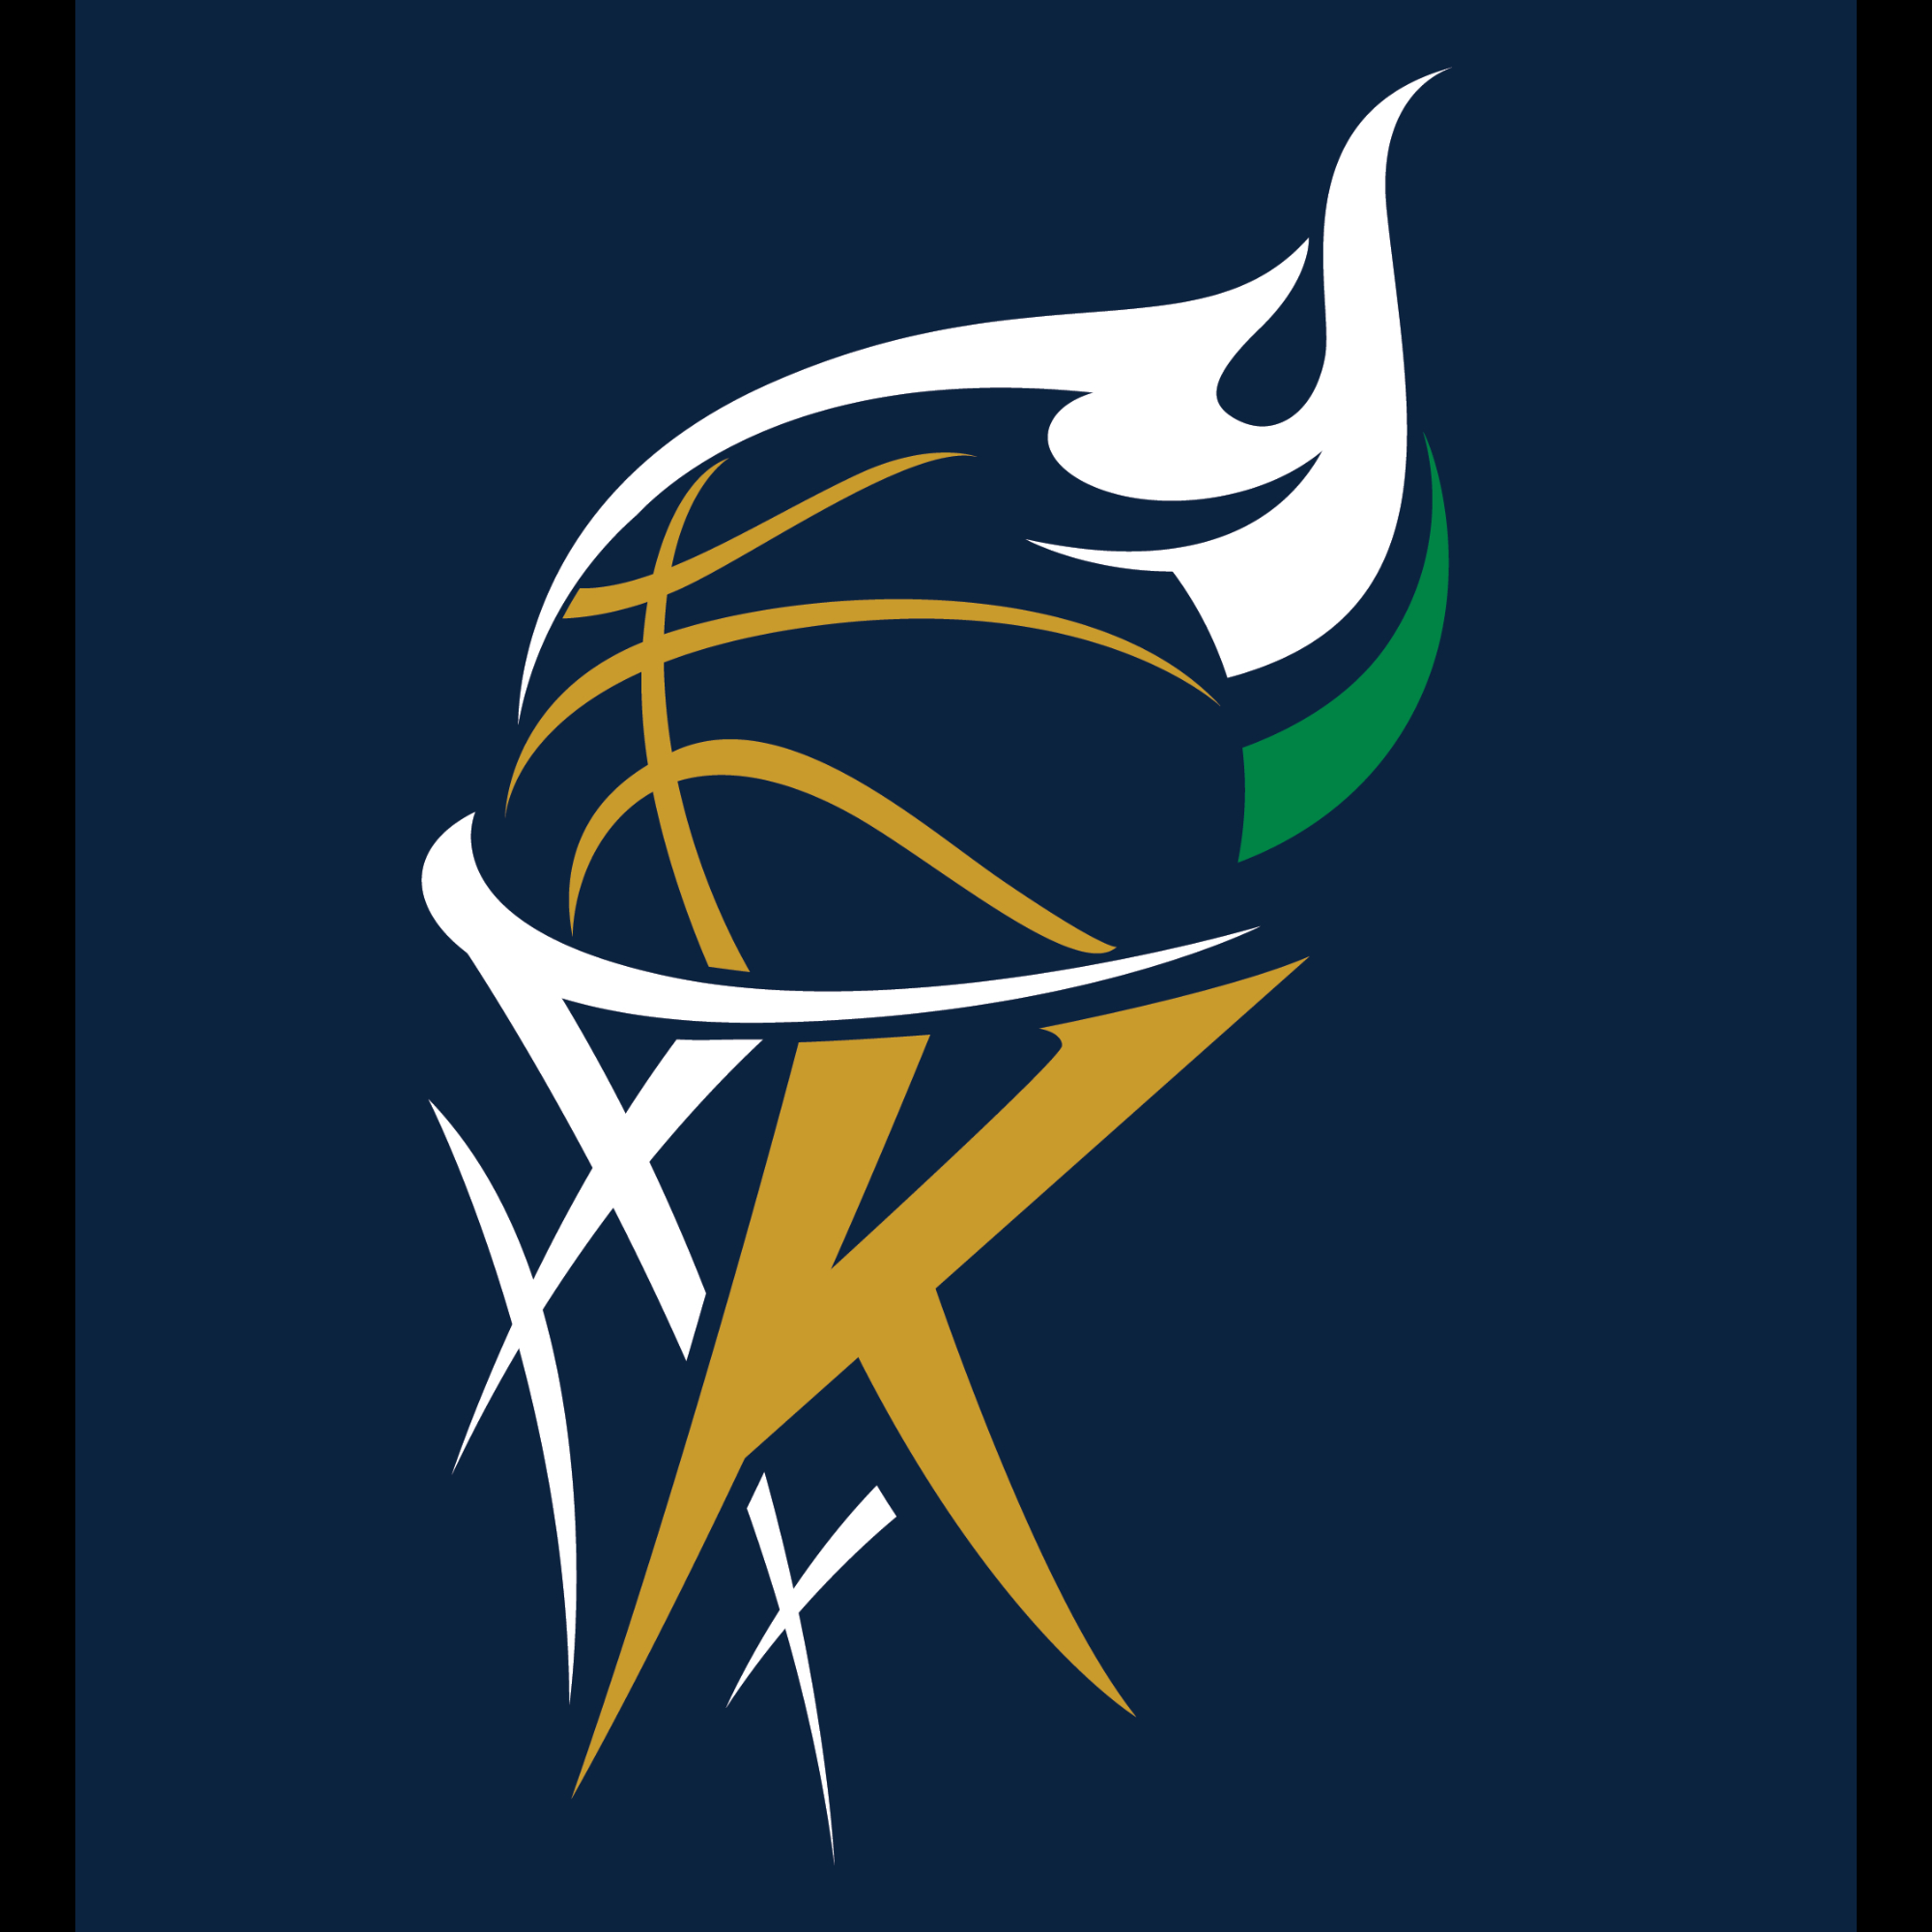 Organization logo for Kaizen Basketball Academy